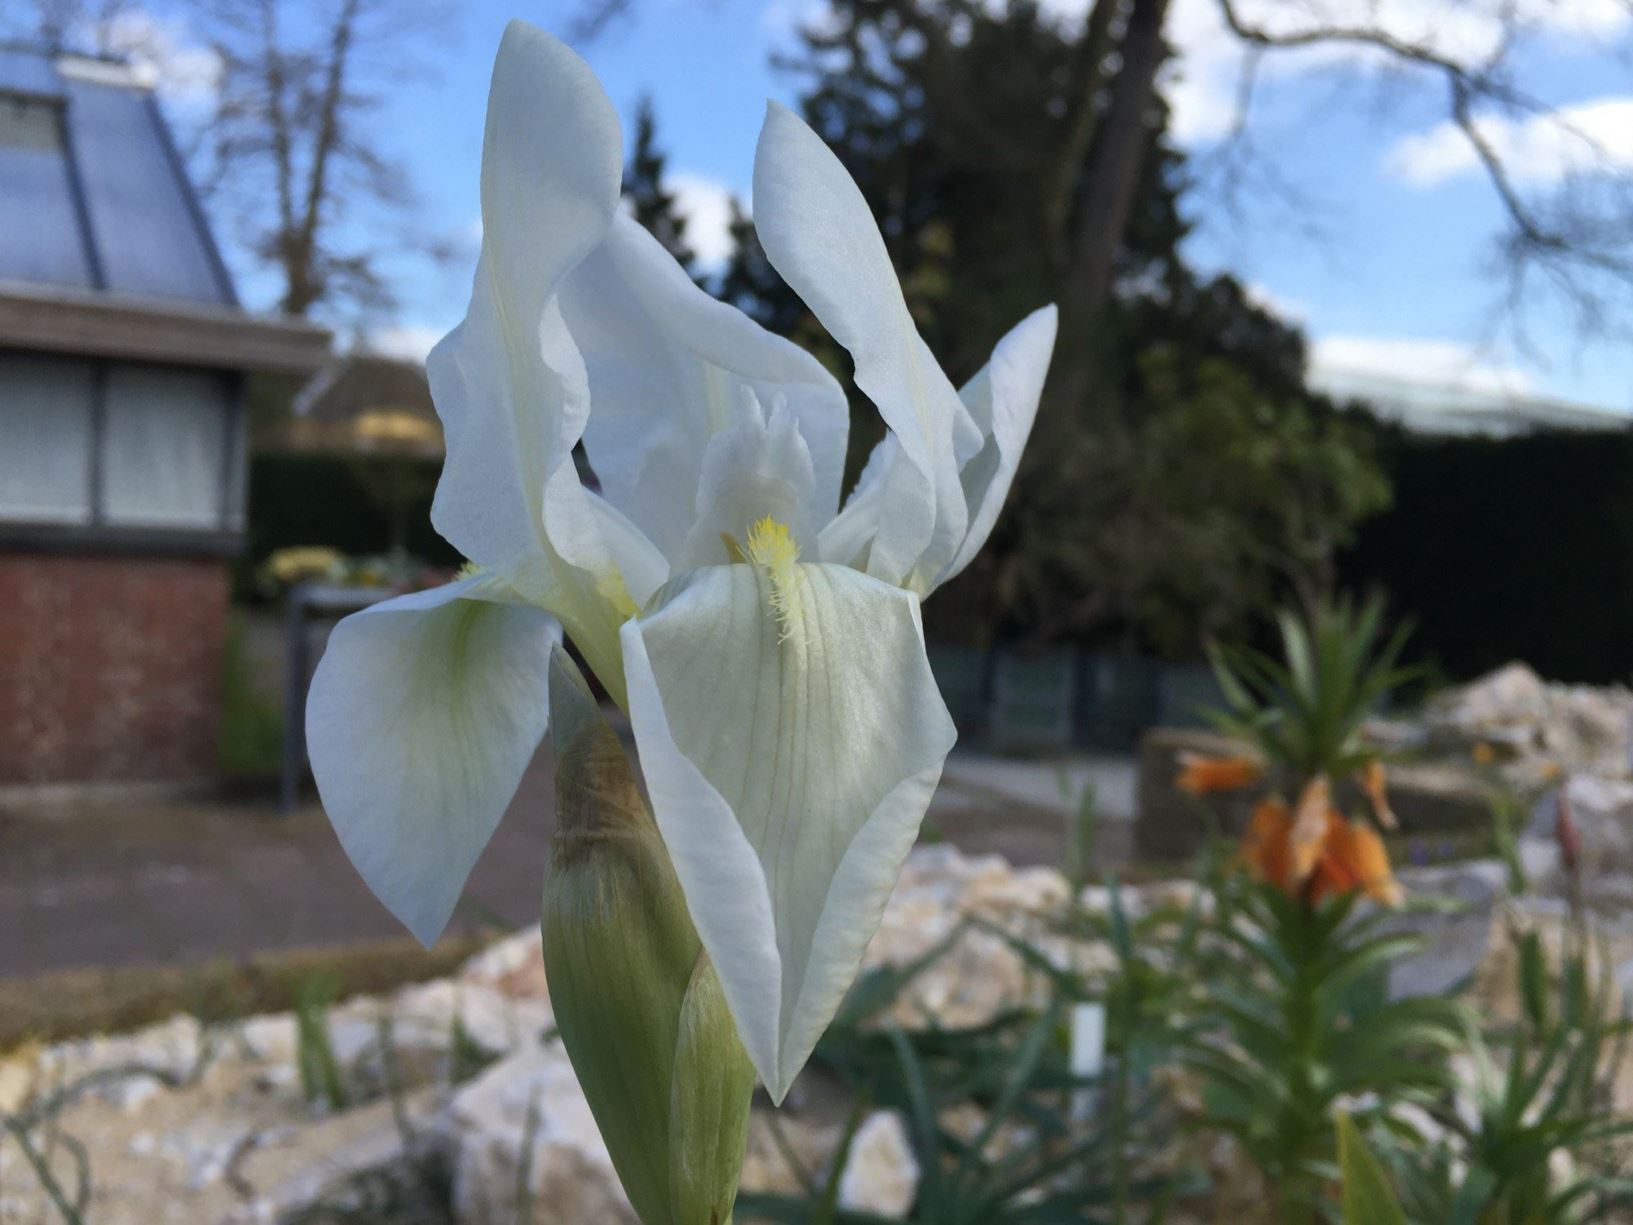 Iris × germanica 'Florentina' - Florentijnse lis, Florentine iris, Orris, Orris-root